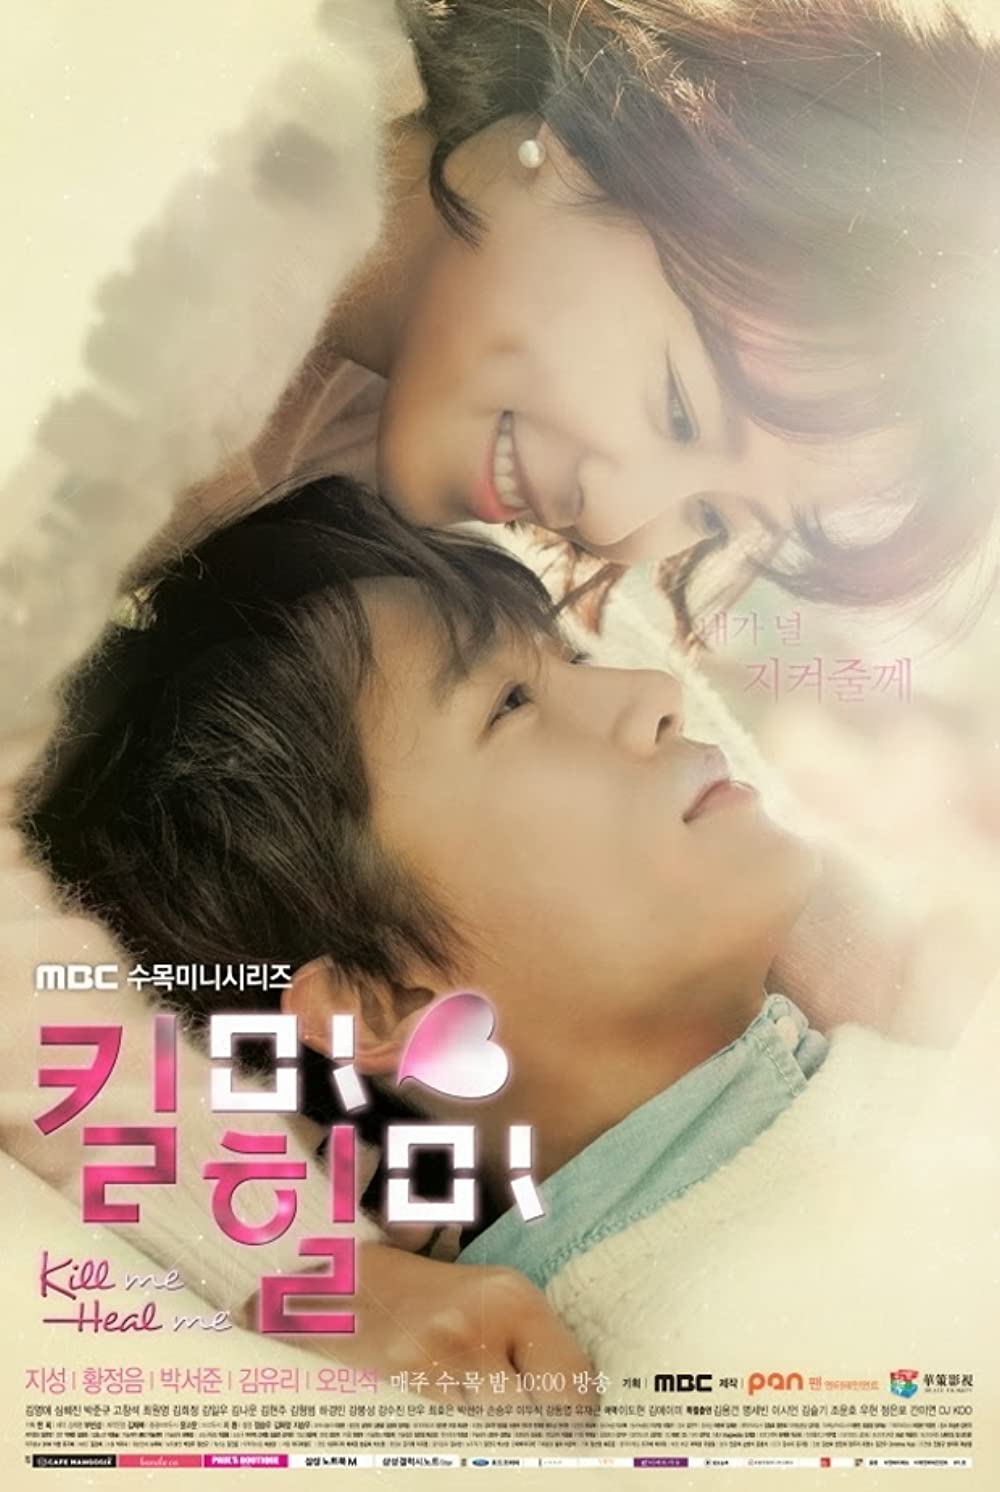 9 Film dan drama Korea tentang depresi, bikin menguras emosi